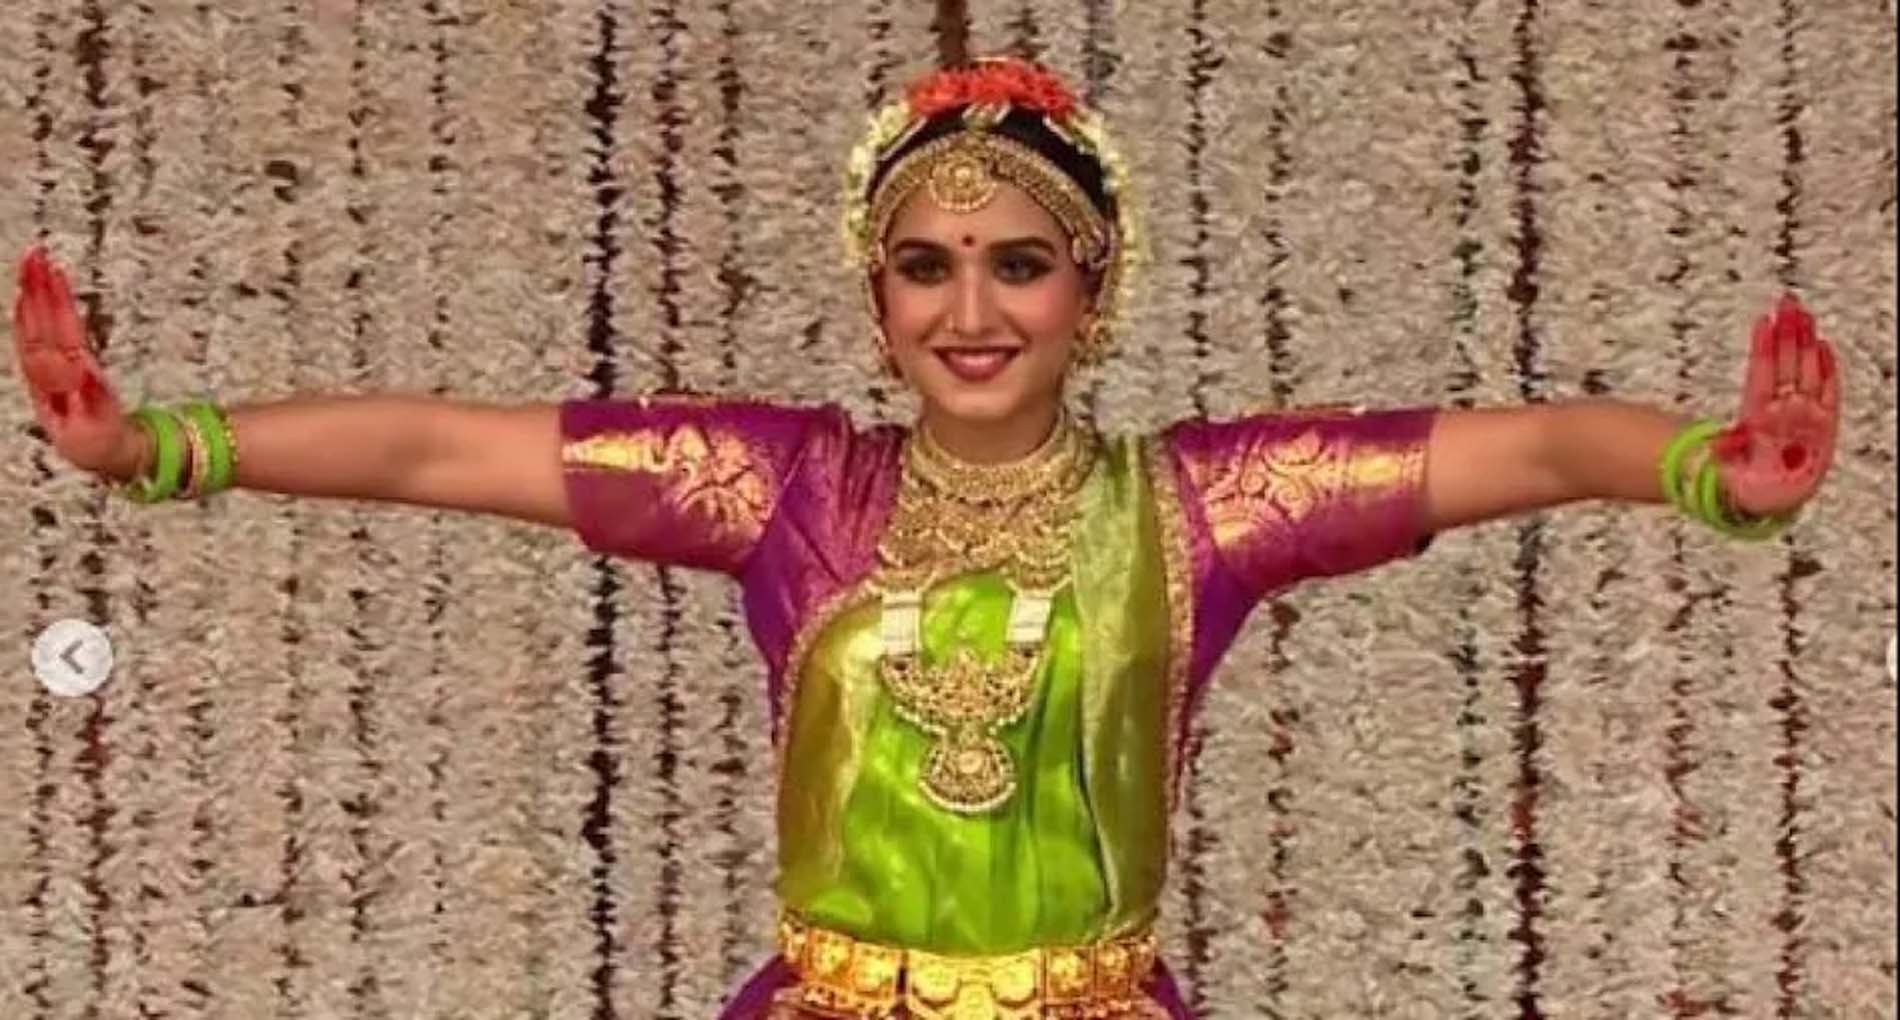 अंबानी परिवार ने होने वाली बहू के लिए रखी ‘अरंगेत्रम’ सेरेमनी, Radhika Merchant ने किया शानदार डांस